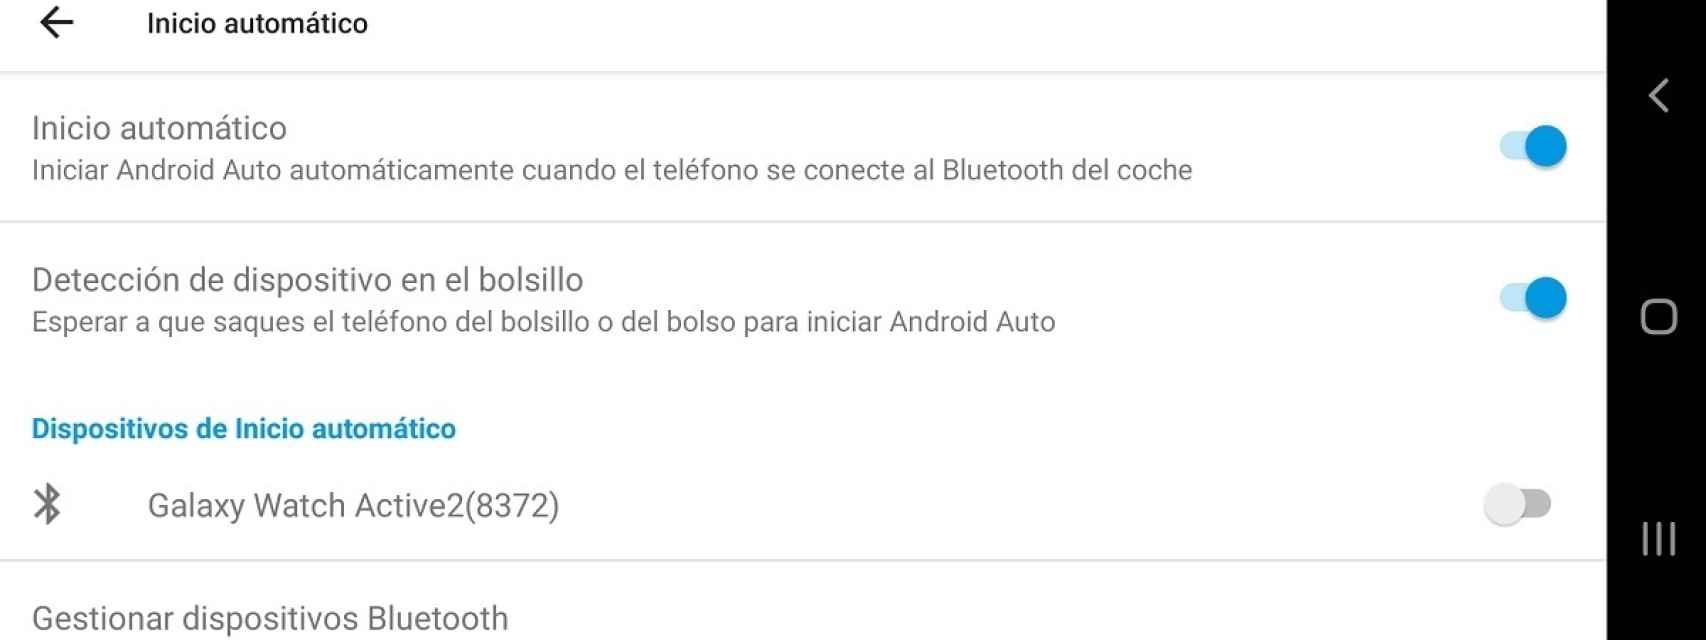 Android Auto inicio automatico